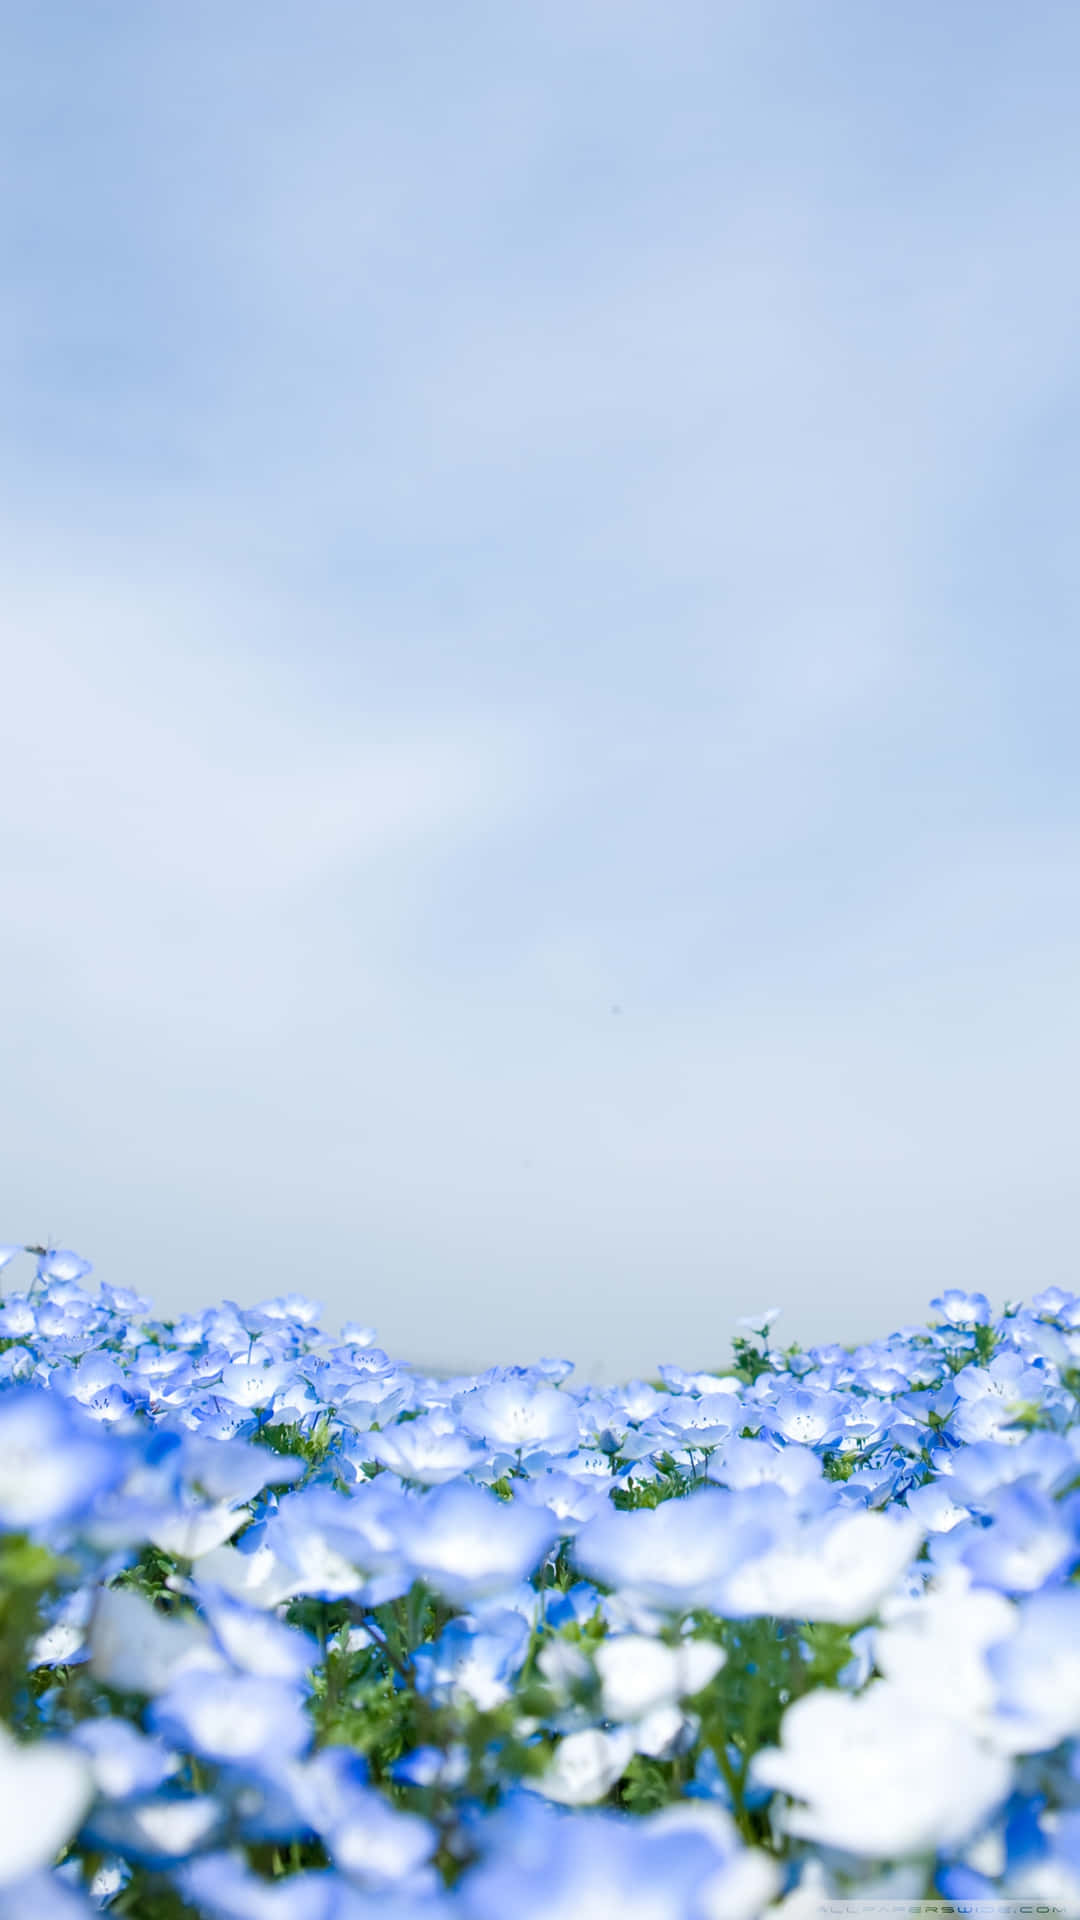 Imagendel Jardín De Flores Azules De Cristal.